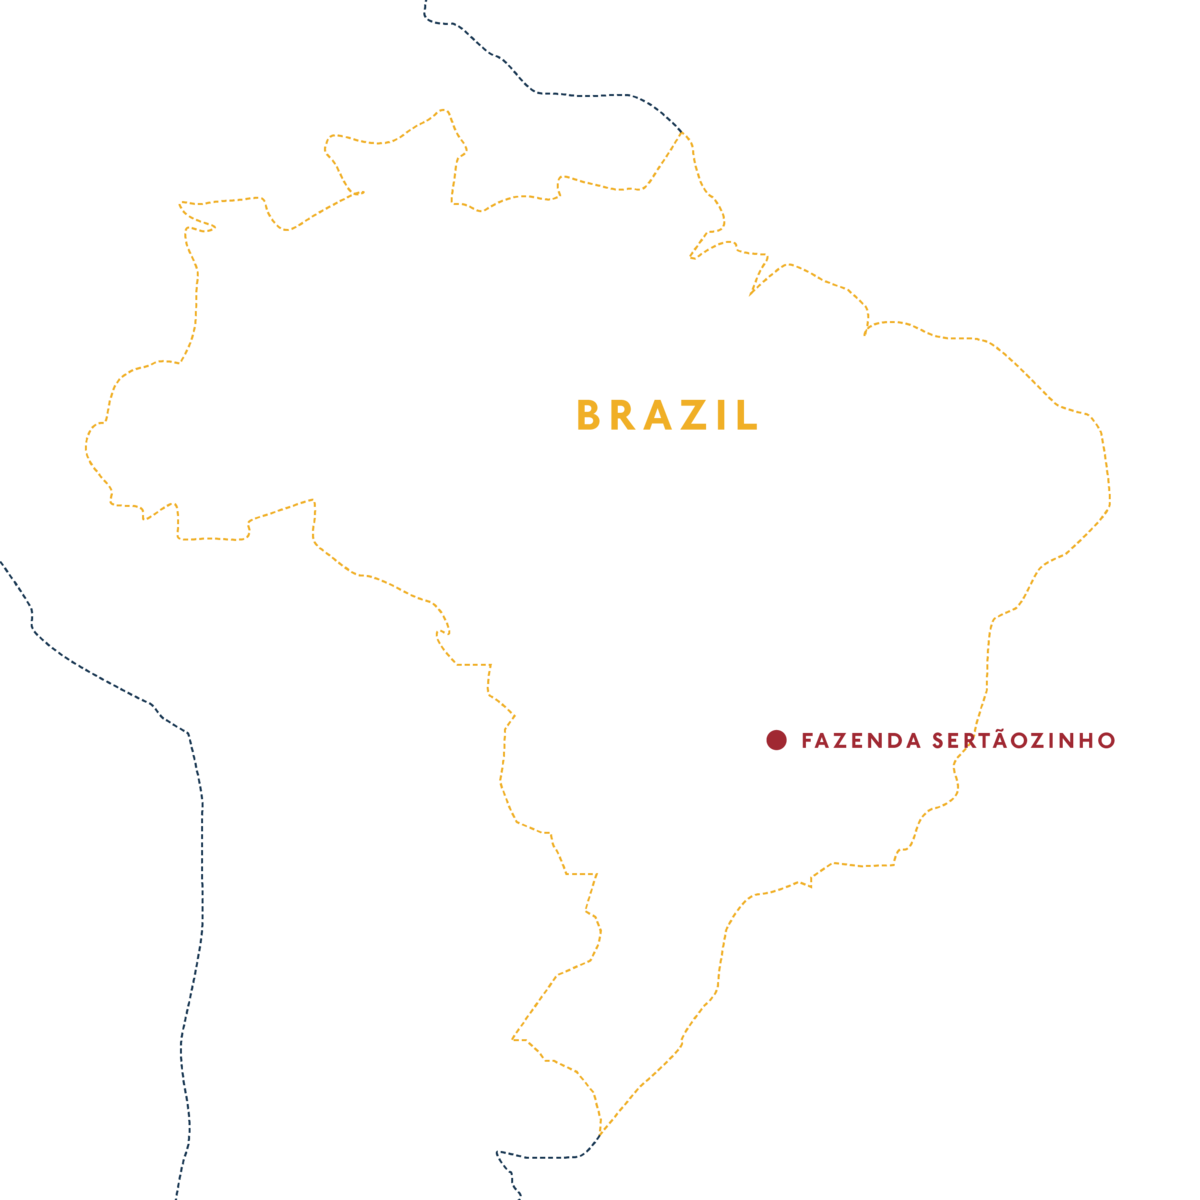 Brazil Fazenda Sertãozinho